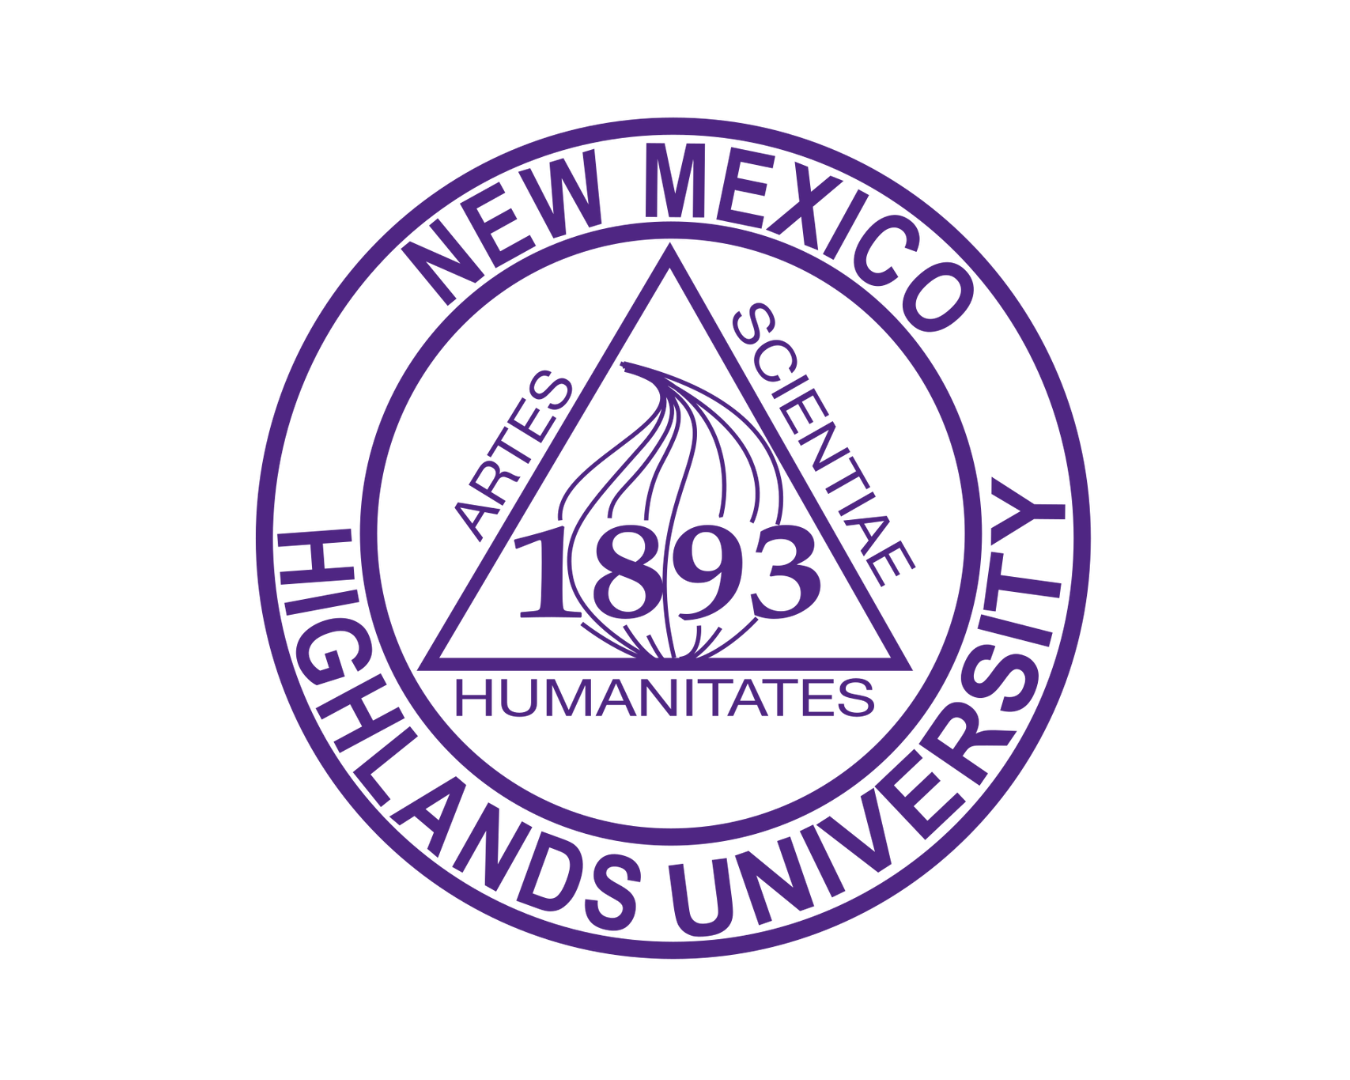 nm-highland-university-logo